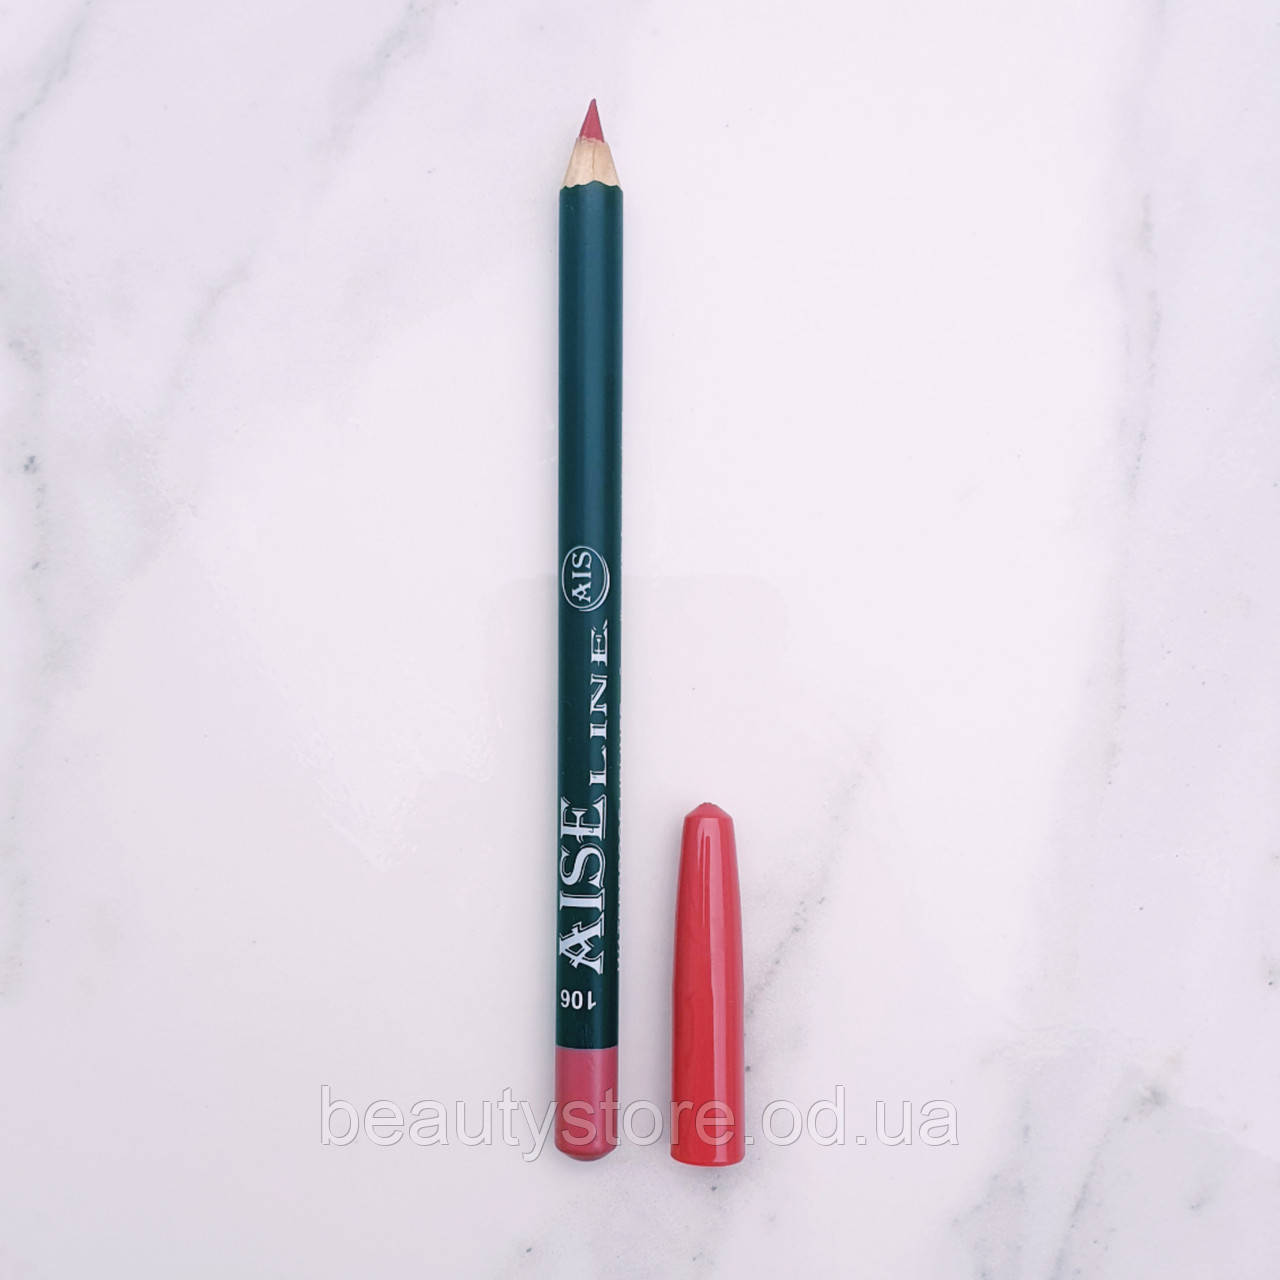 Водостойкий карандаш для губ (106) Aise Line Waterproof Lipliner